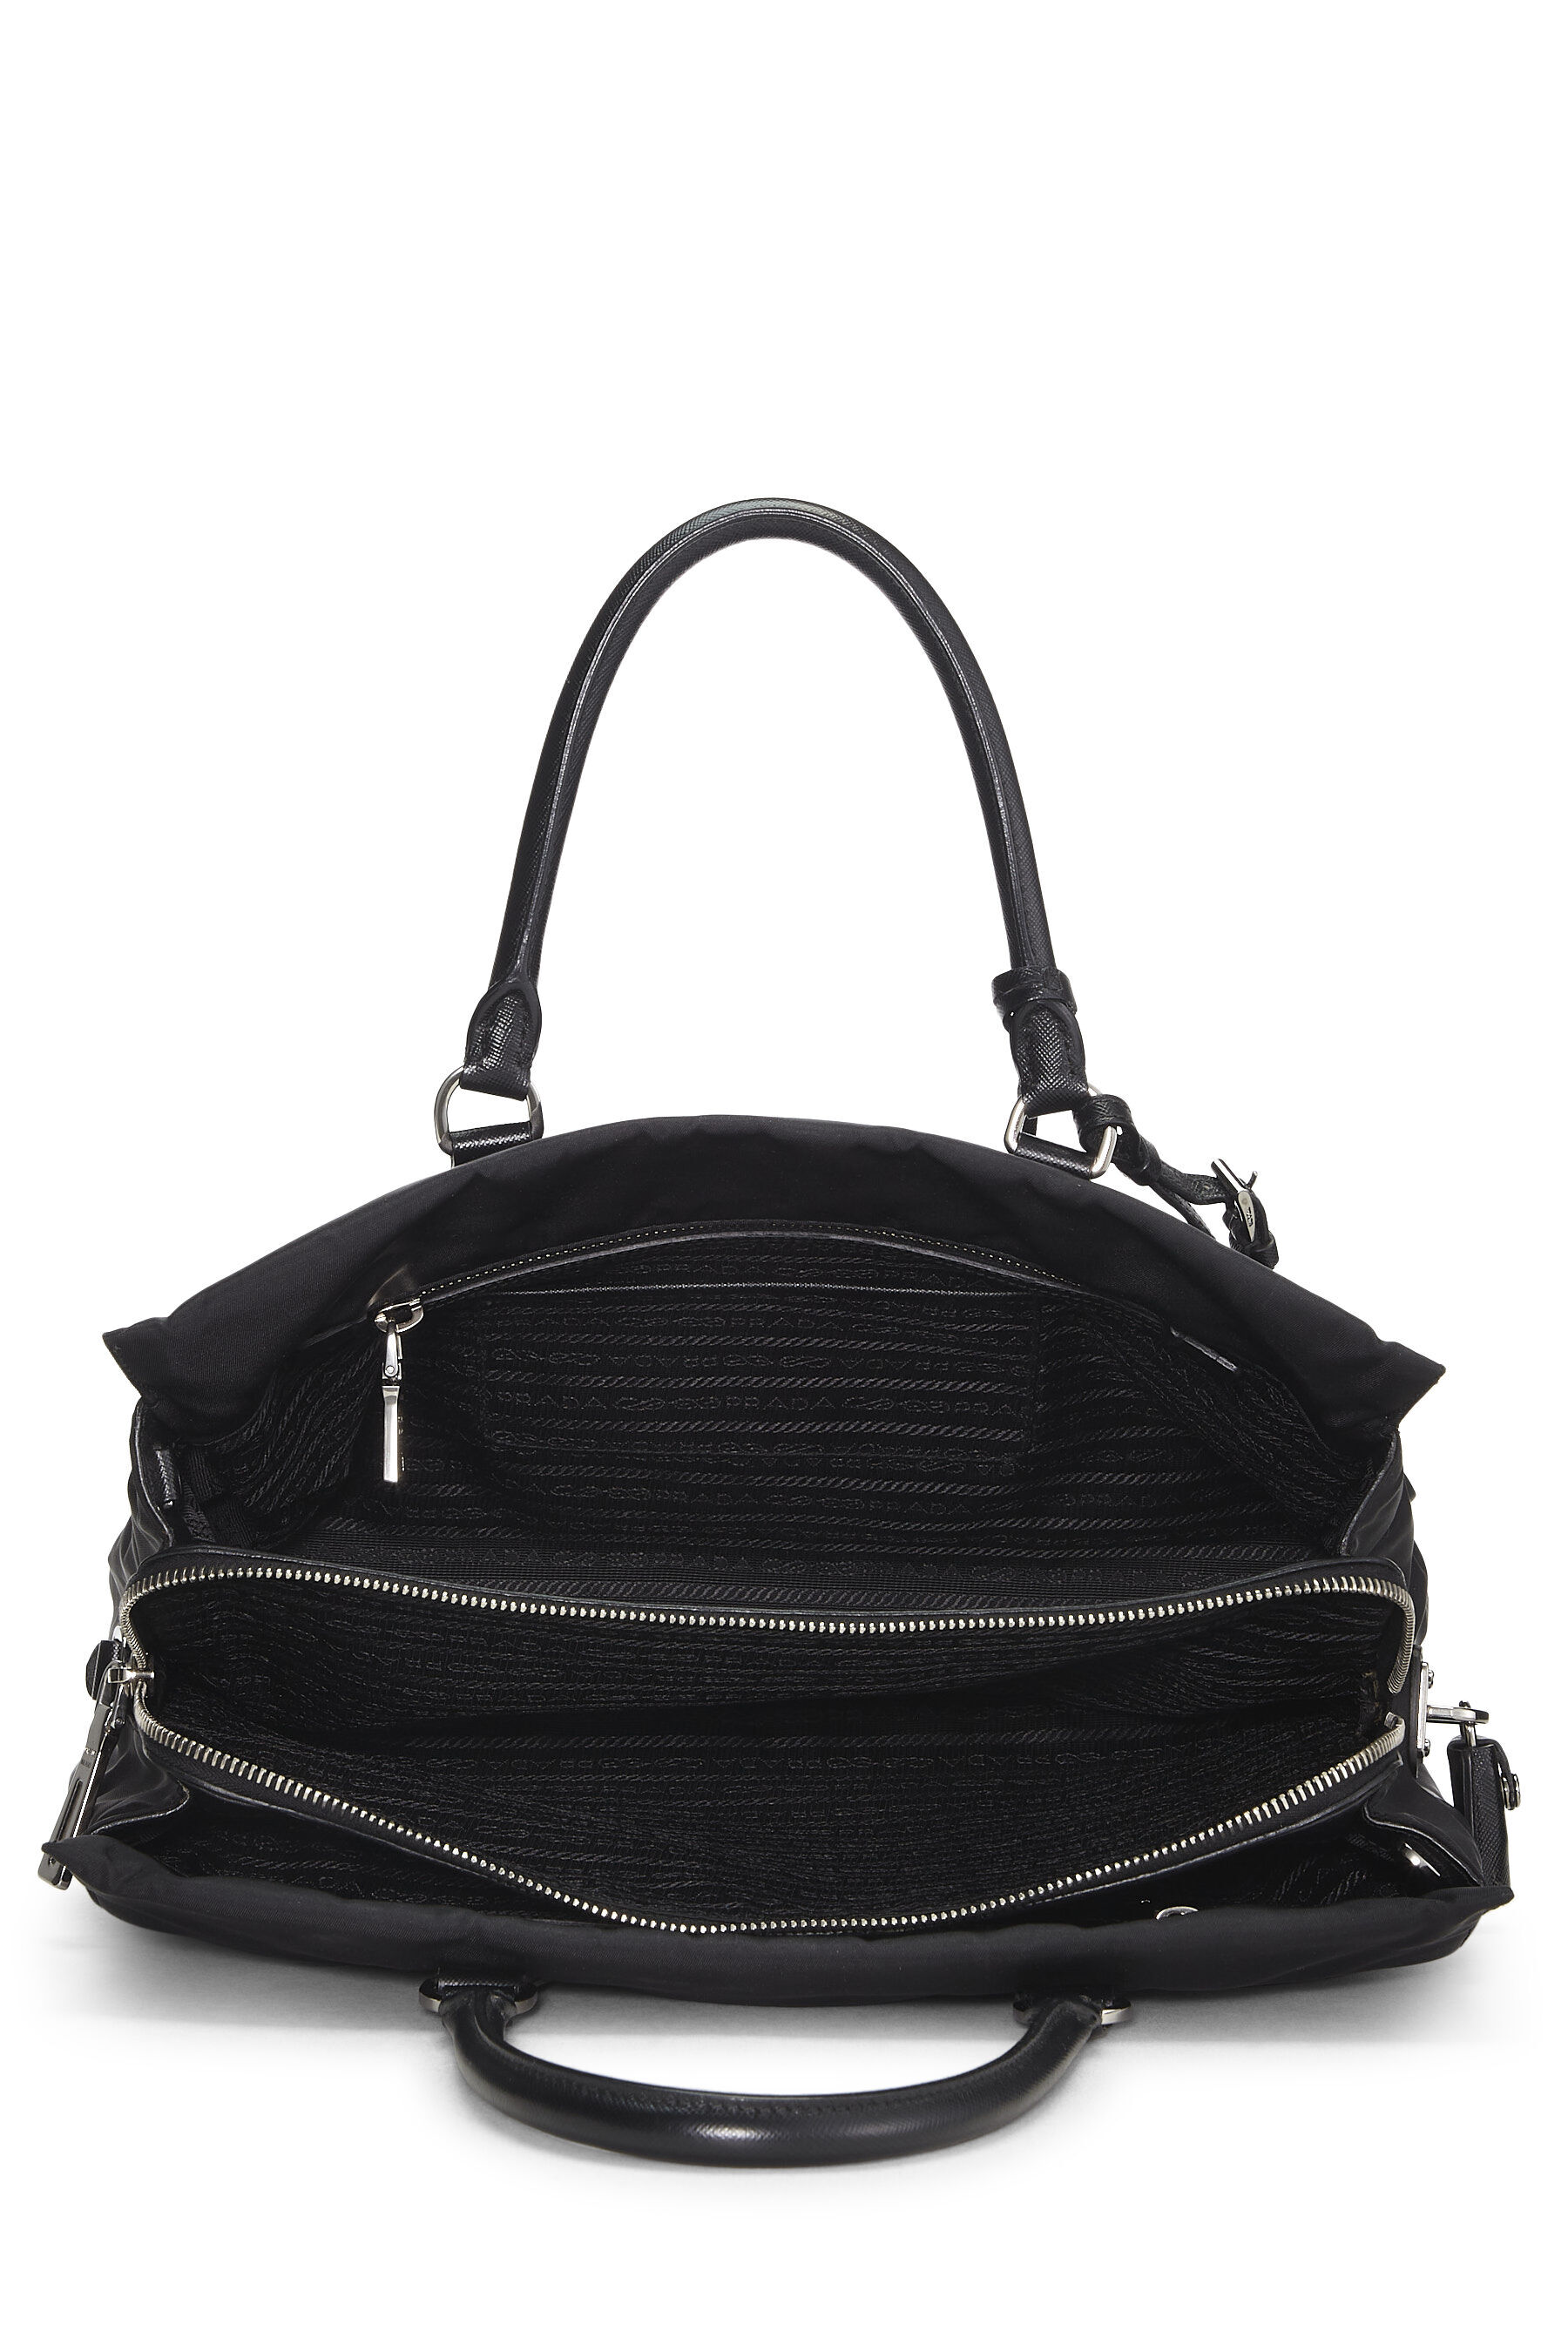 Prada Saffiano Leather Odette Bag, Black | Costco